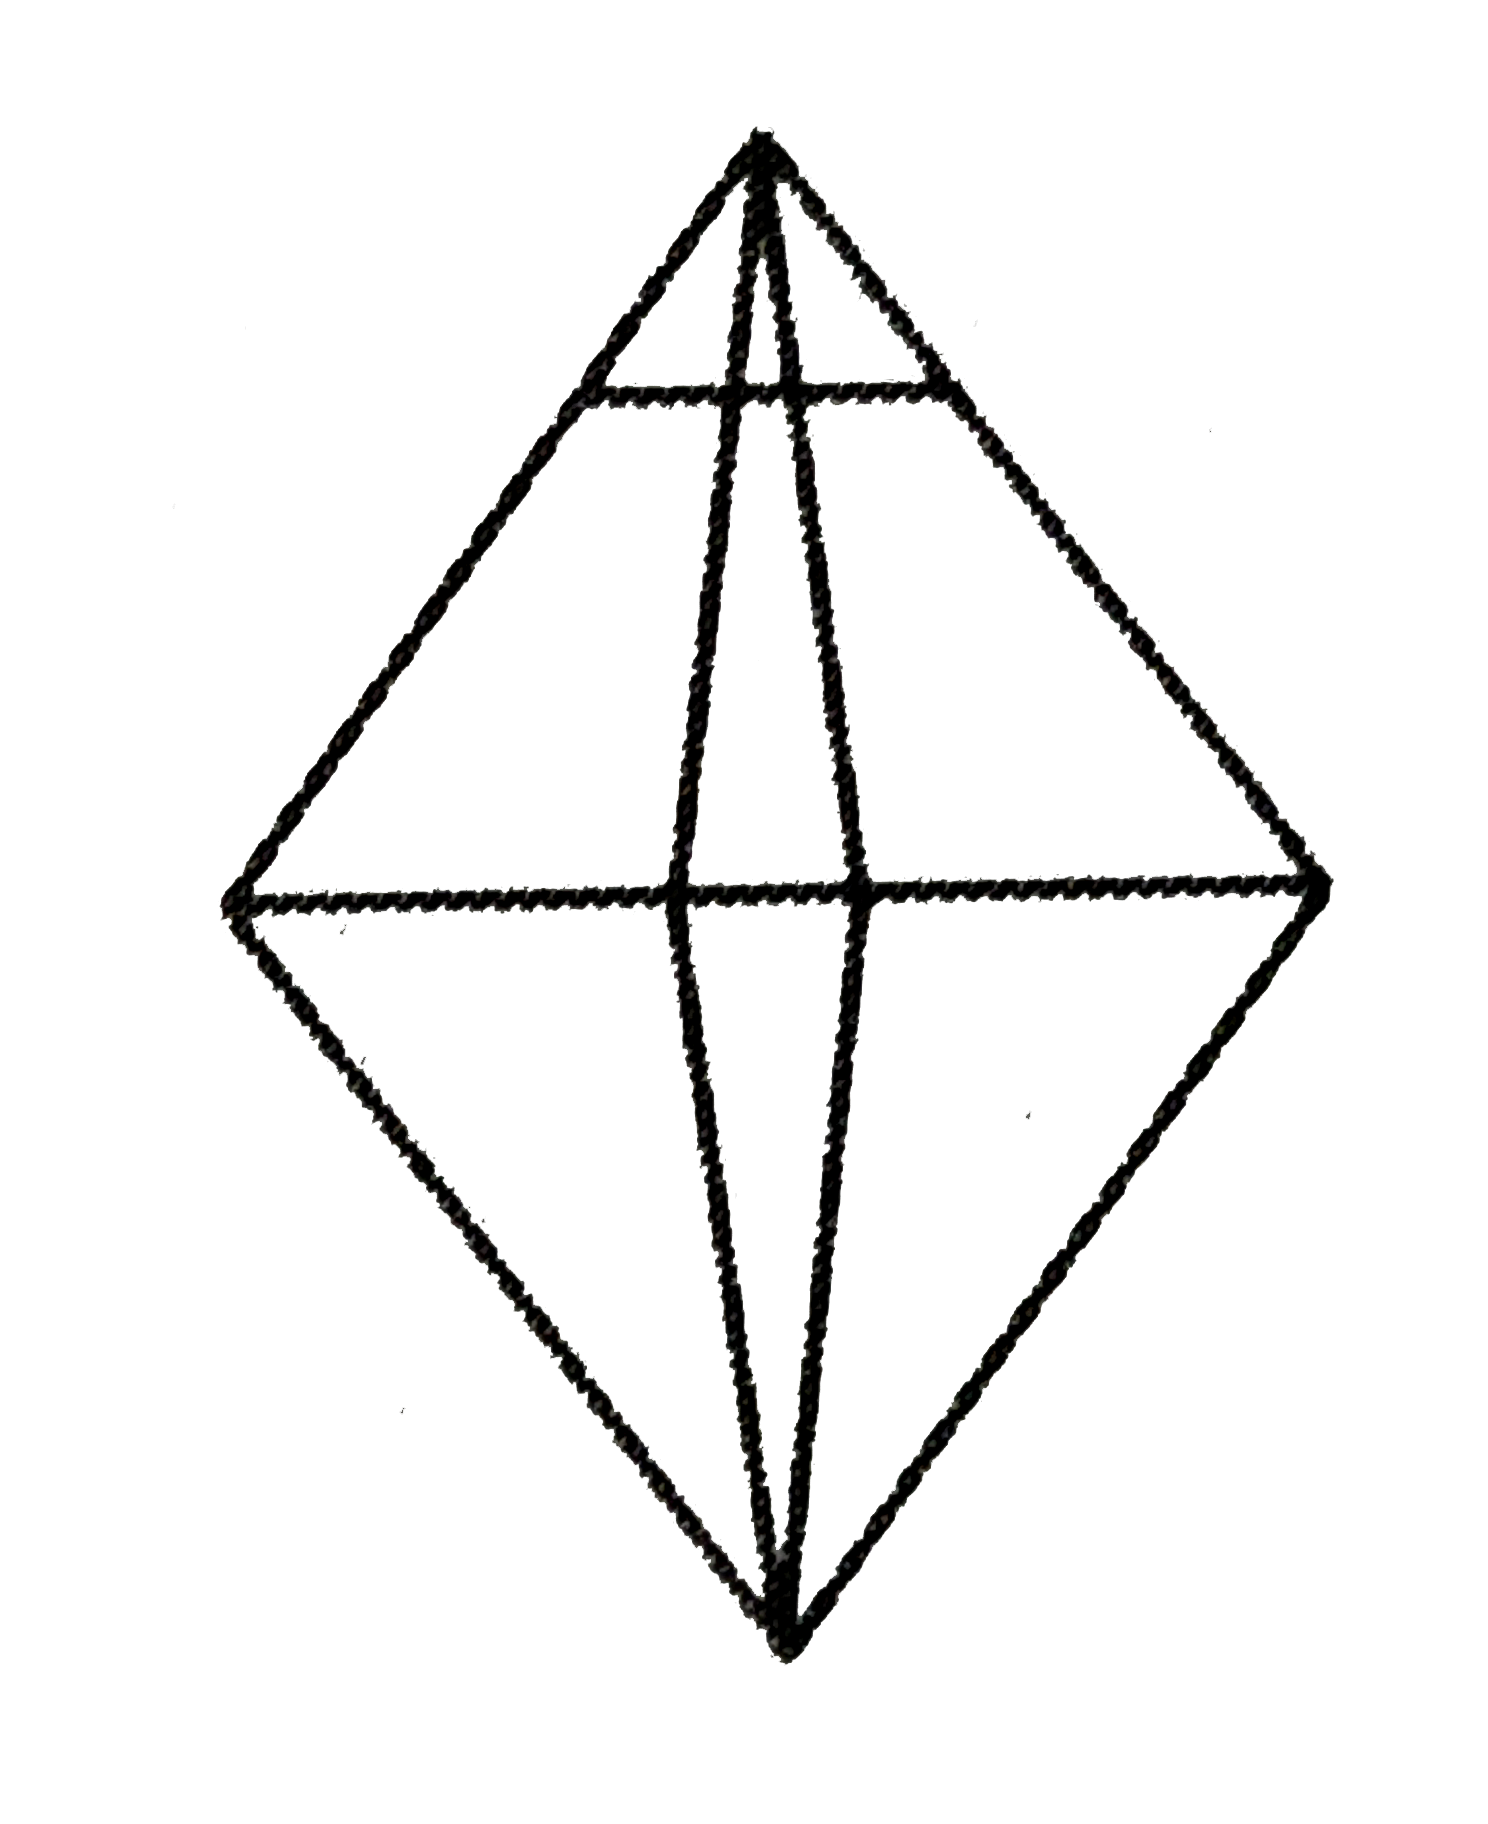 ज्यामितिक चित्र में कितने त्रिभुज है ?